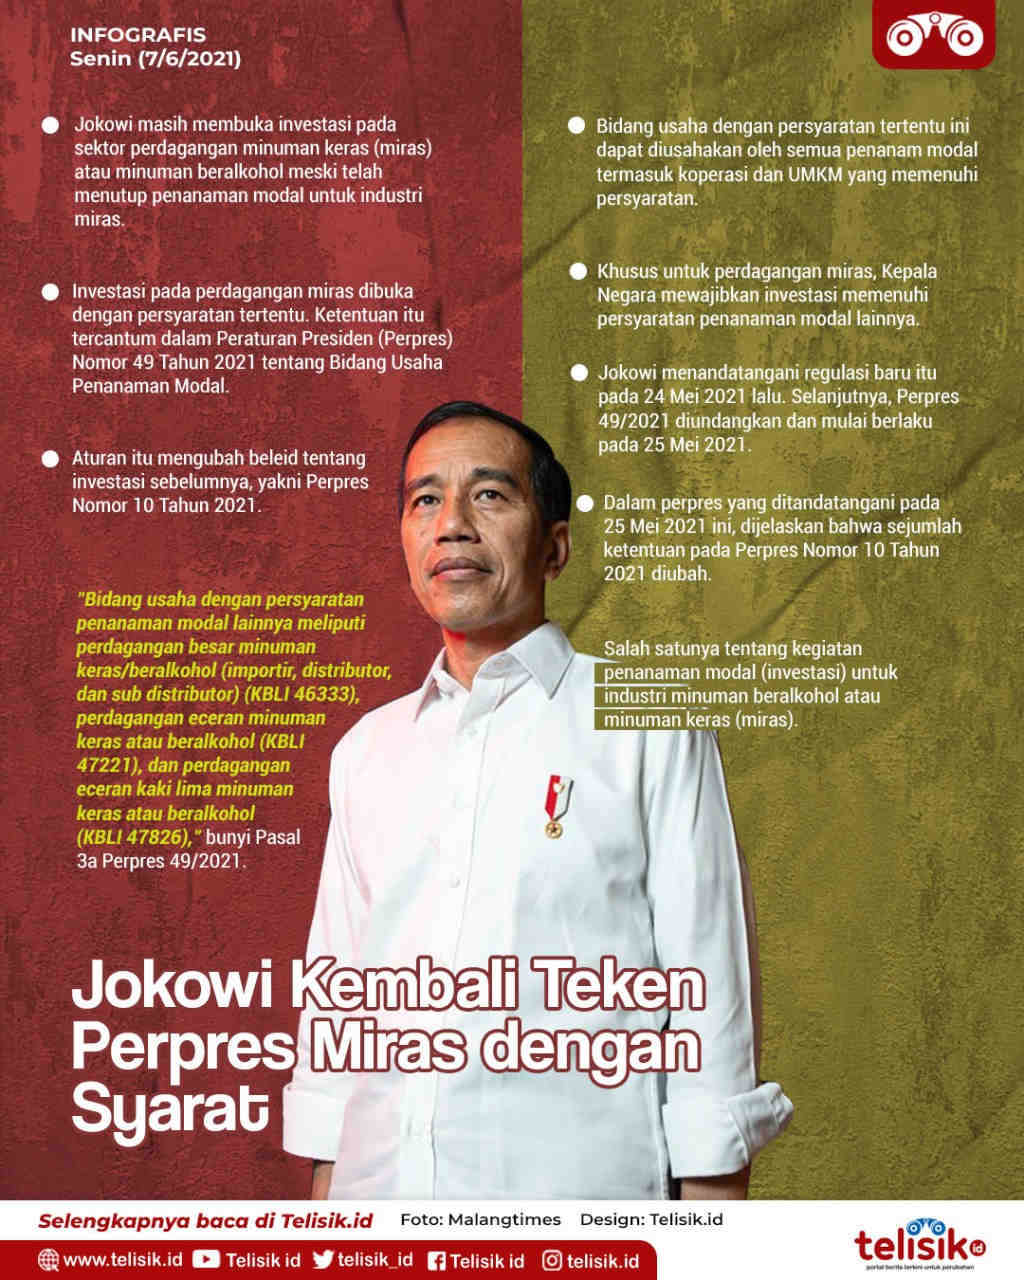 Infografis: Jokowi Kembali Teken Perpres Miras dengan Syarat